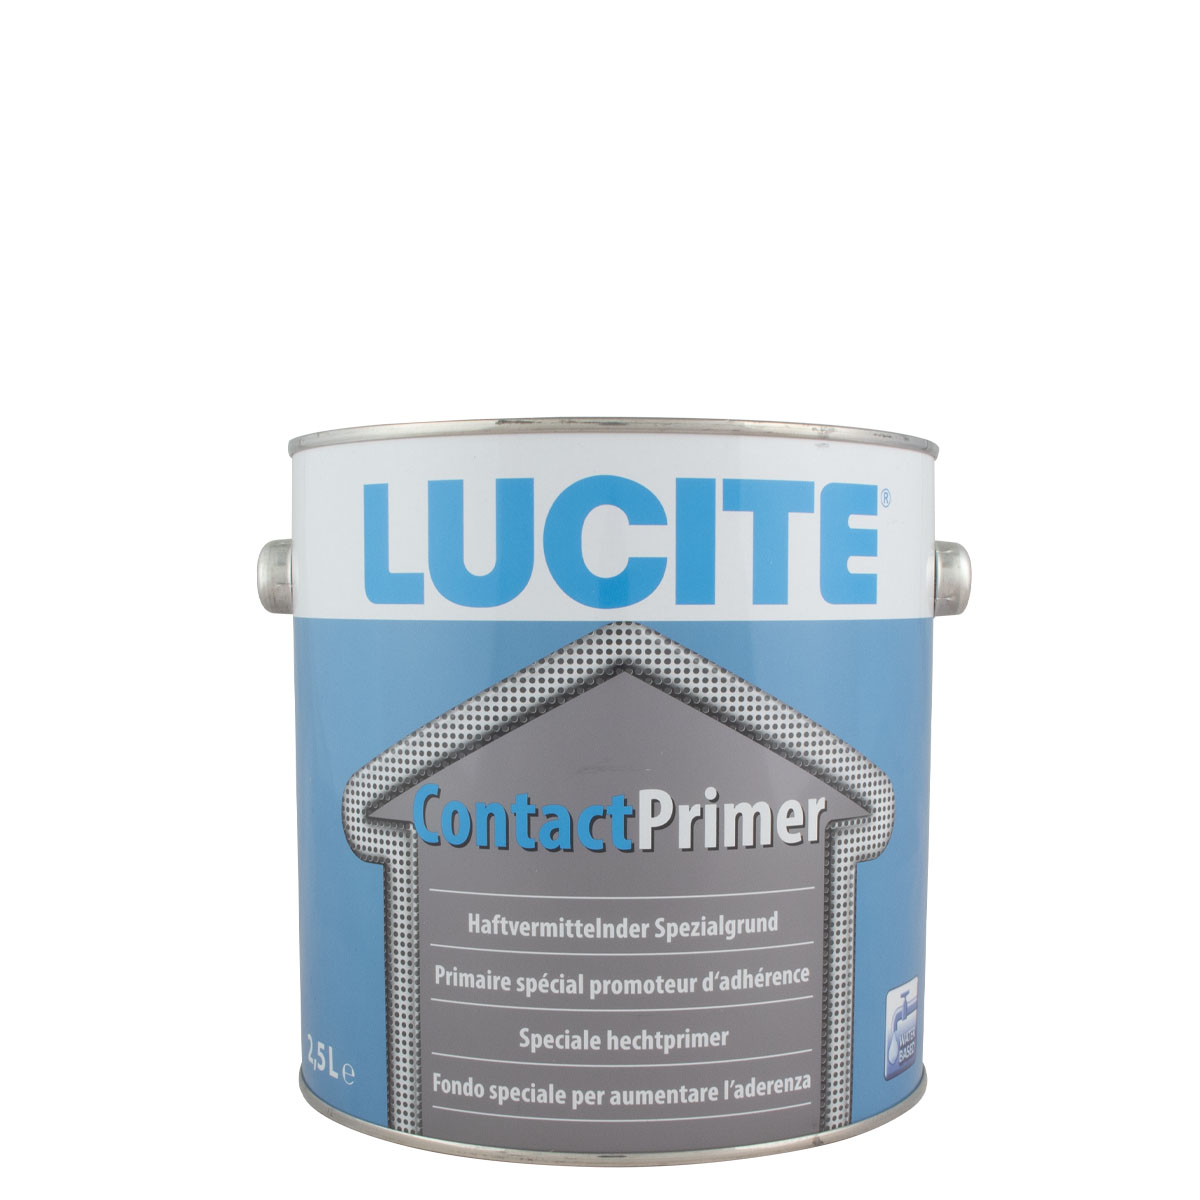 Lucite Contact Primer 2,5L, weiß Haftvermittelnder Spezialgrund